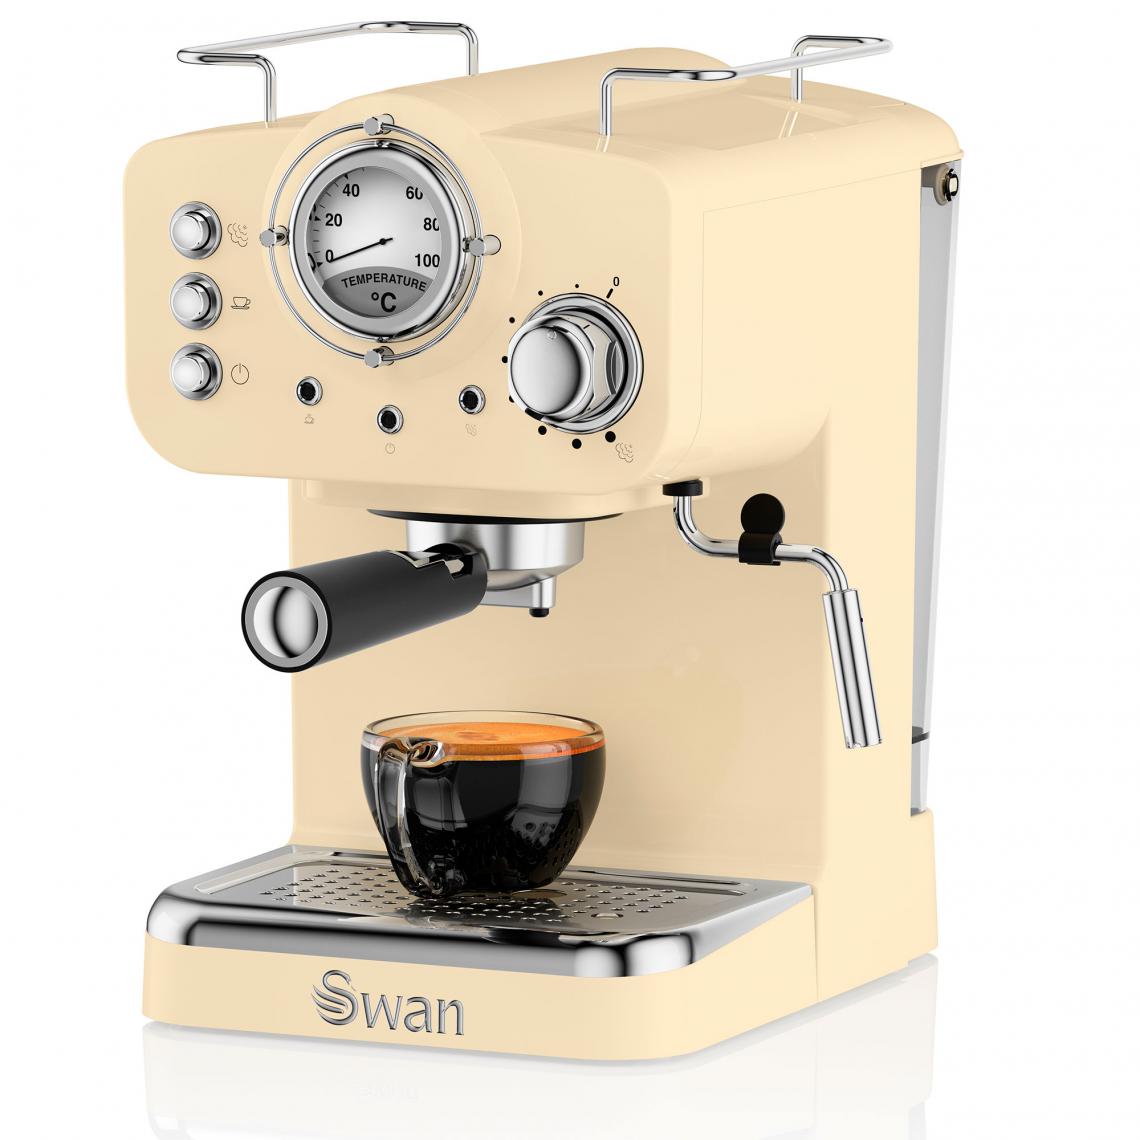 Swan - Retro Machine à Café 15 Bars, Espresso, Cappuccino Buse Vapeur à Lait, Vintage 1100W Crème SWAN SK22110CN - Expresso - Cafetière